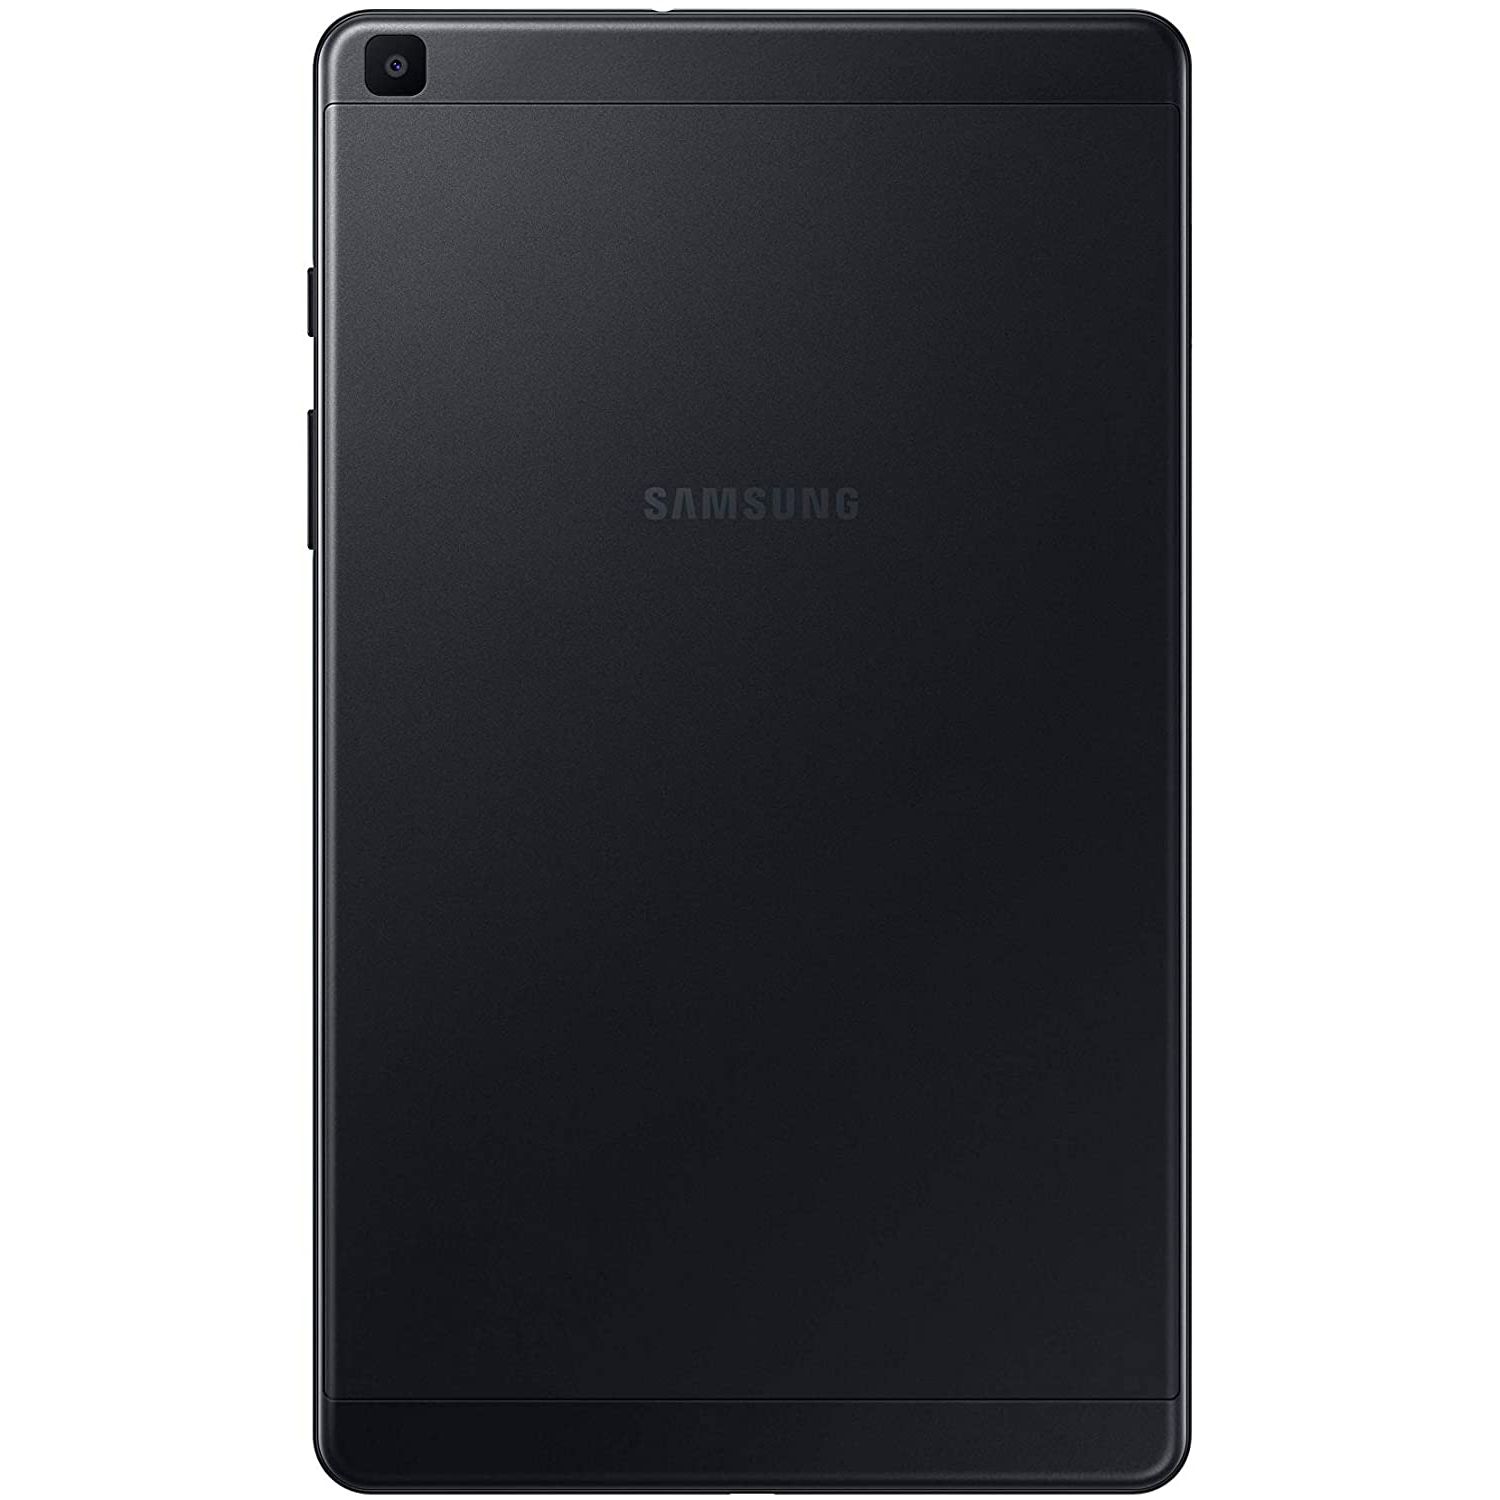 Samsung Galaxy Tab A 8.0 03